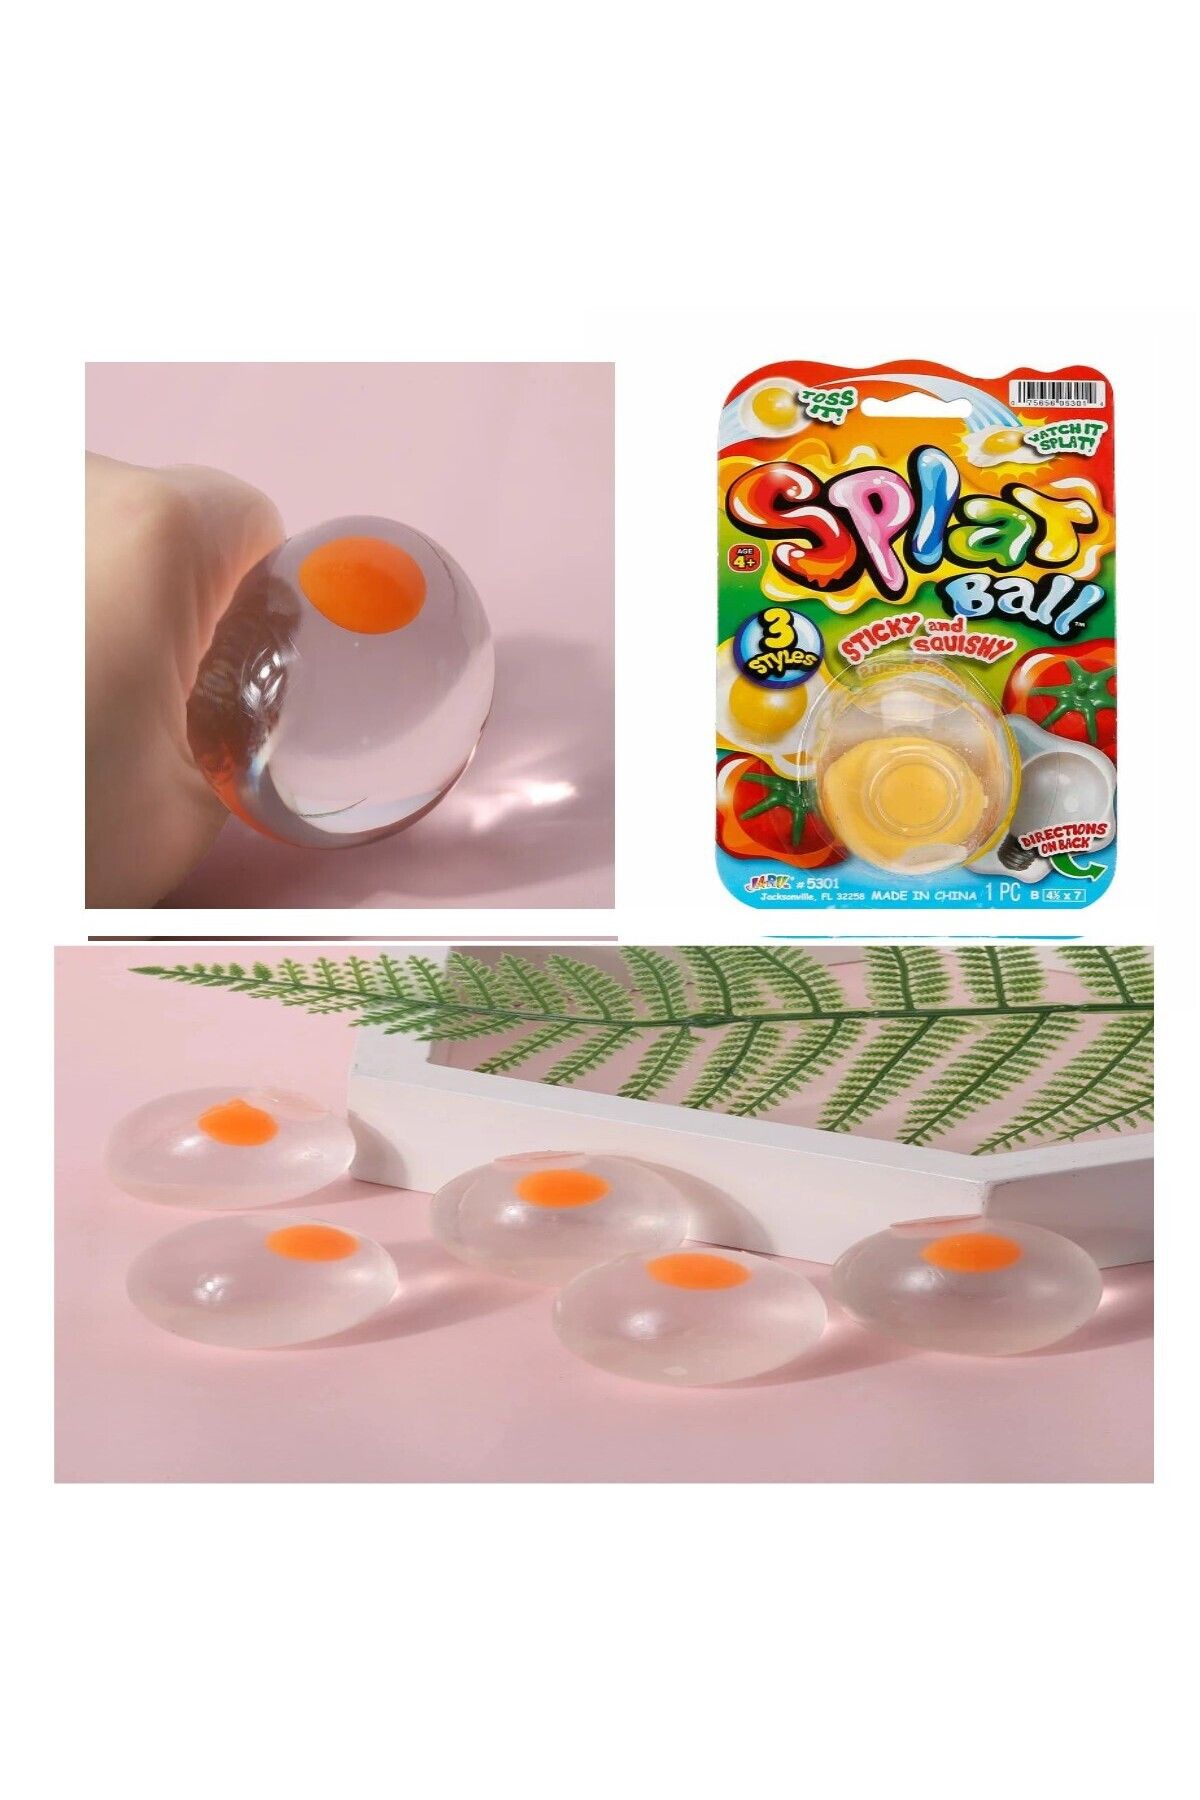 BAMTEBİ Yumuşak Yumurta Squish Attack Streç Gıdalar Yapışkan Yumusta Skuşhi Splat Ball 5.5 Cm